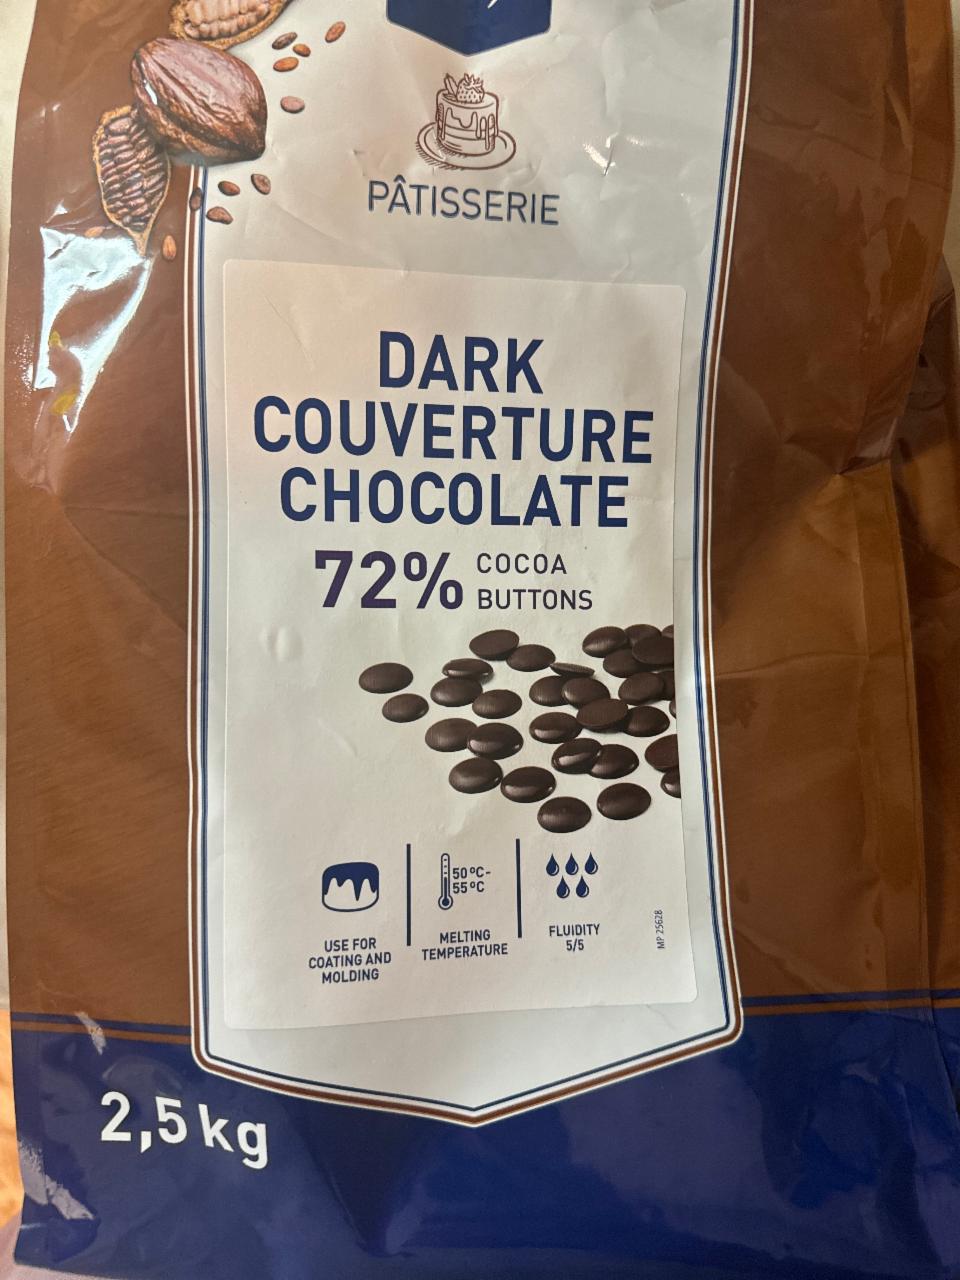 Fotografie - Drak couverture chocolate 72% cocoa buttons Pâtisserie